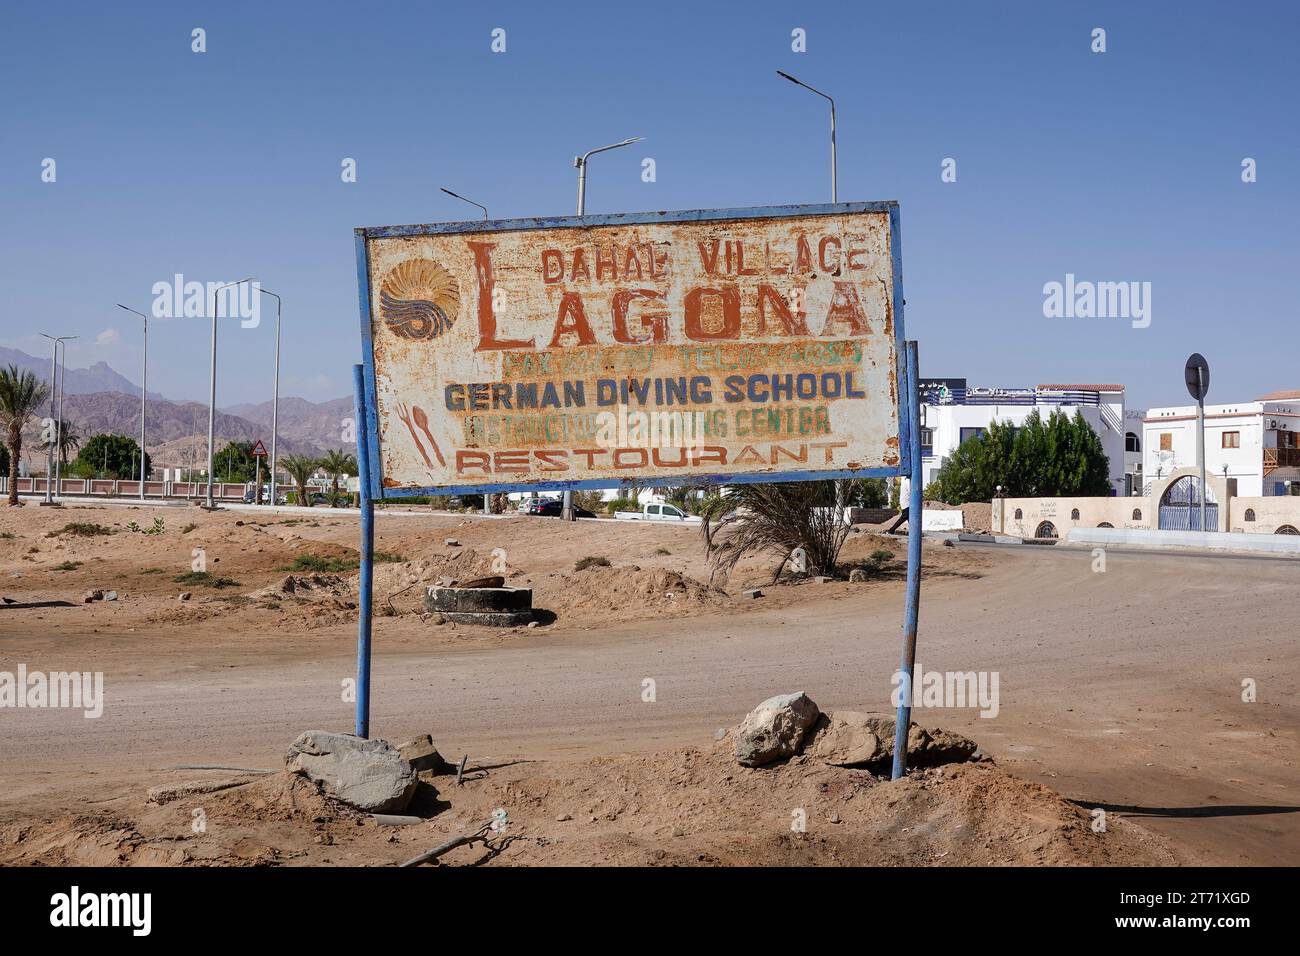 Altes, verrostetes Werbeschild, Dahab Village Lagona, Deutsche Tauchschule, Dahab, Sinai, Ägypten Stockfoto